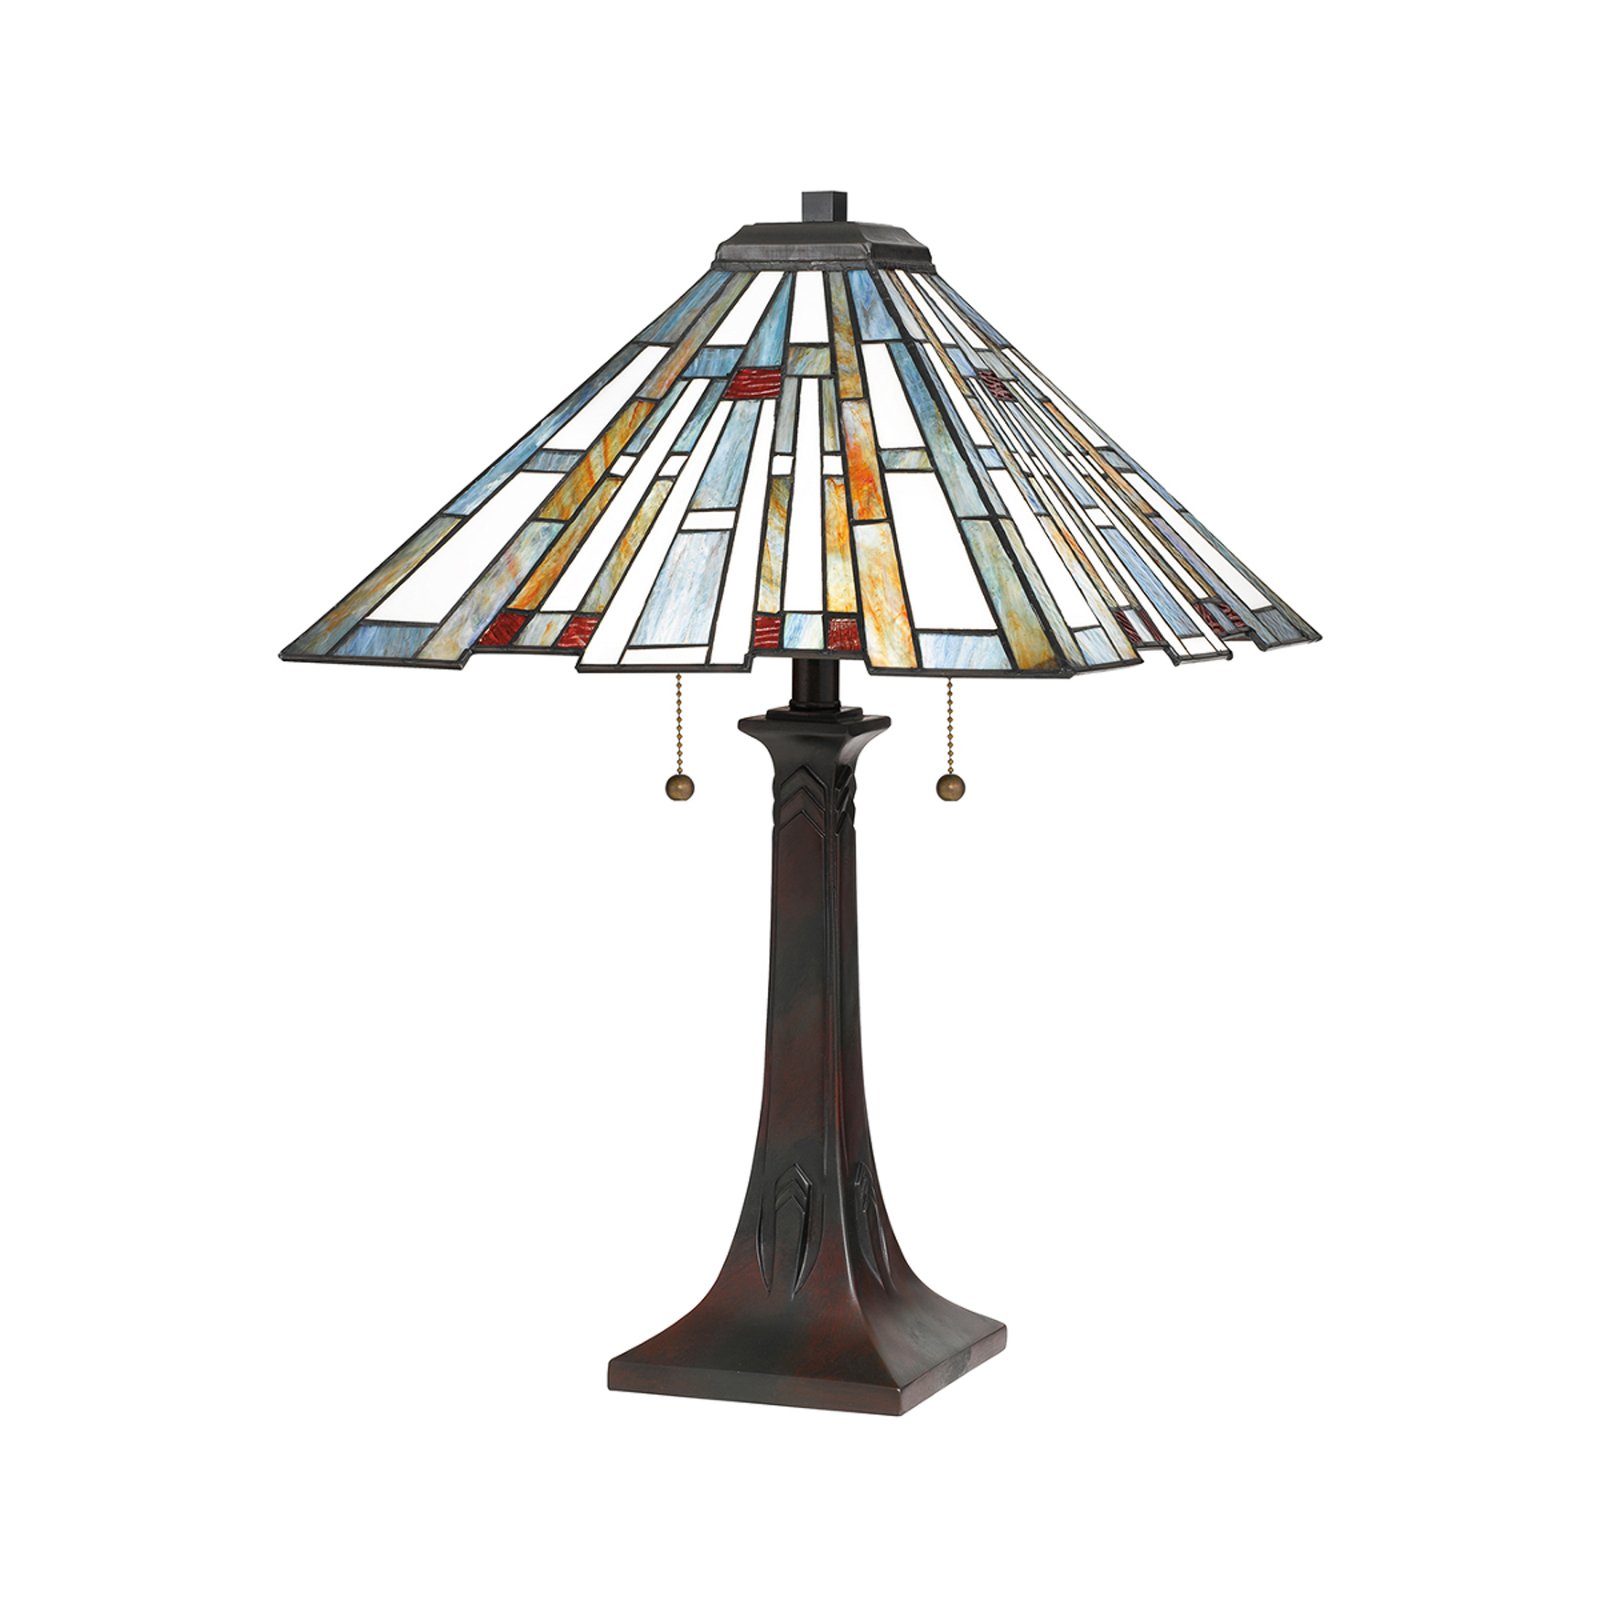 Maybeck bordlampe i Tiffany-design